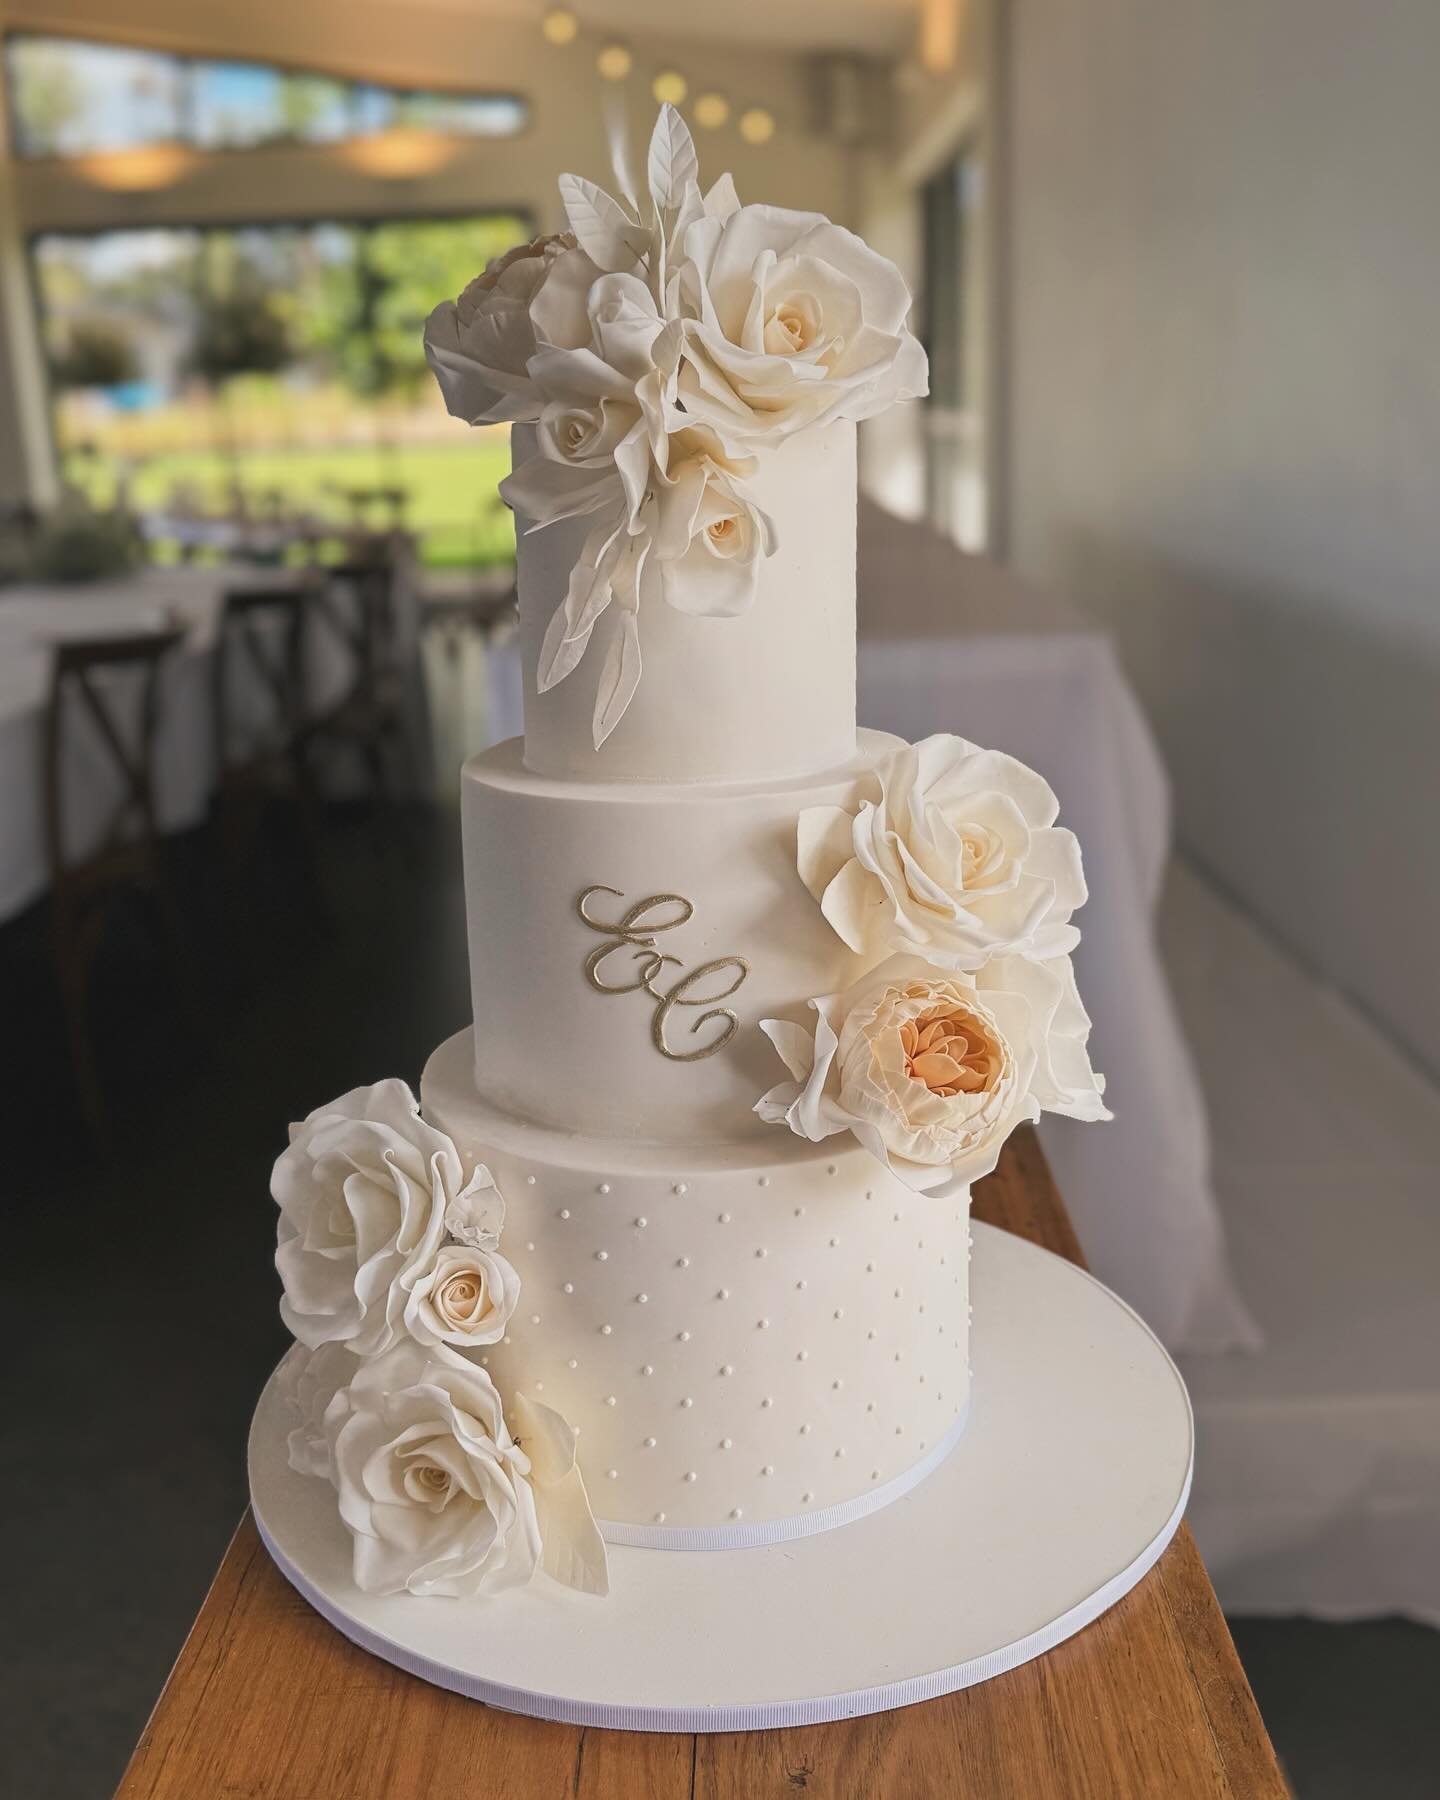 On site at @kangaroovalleybushretreat for the gorgeous wedding of Charmaine and EJ 
.
.
#weddingcake #kangaroovalleywedding #kangaroovalleyweddings #sugarflowers #cakeporm #sydneyweddingcake #cakelover #fayecahillcakedesign